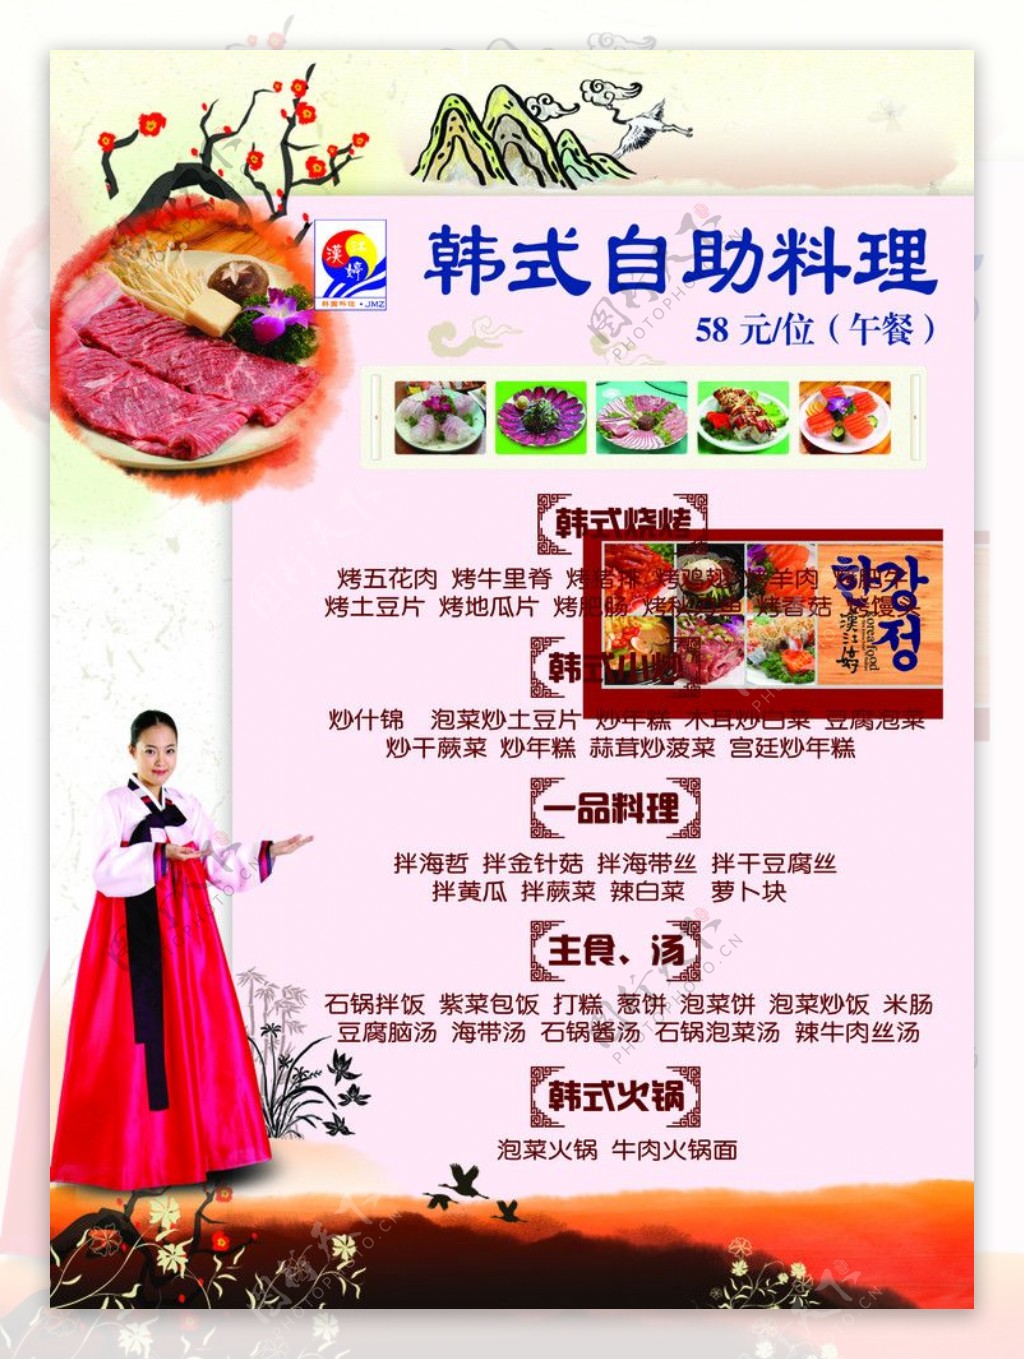 韩式自助料理图片